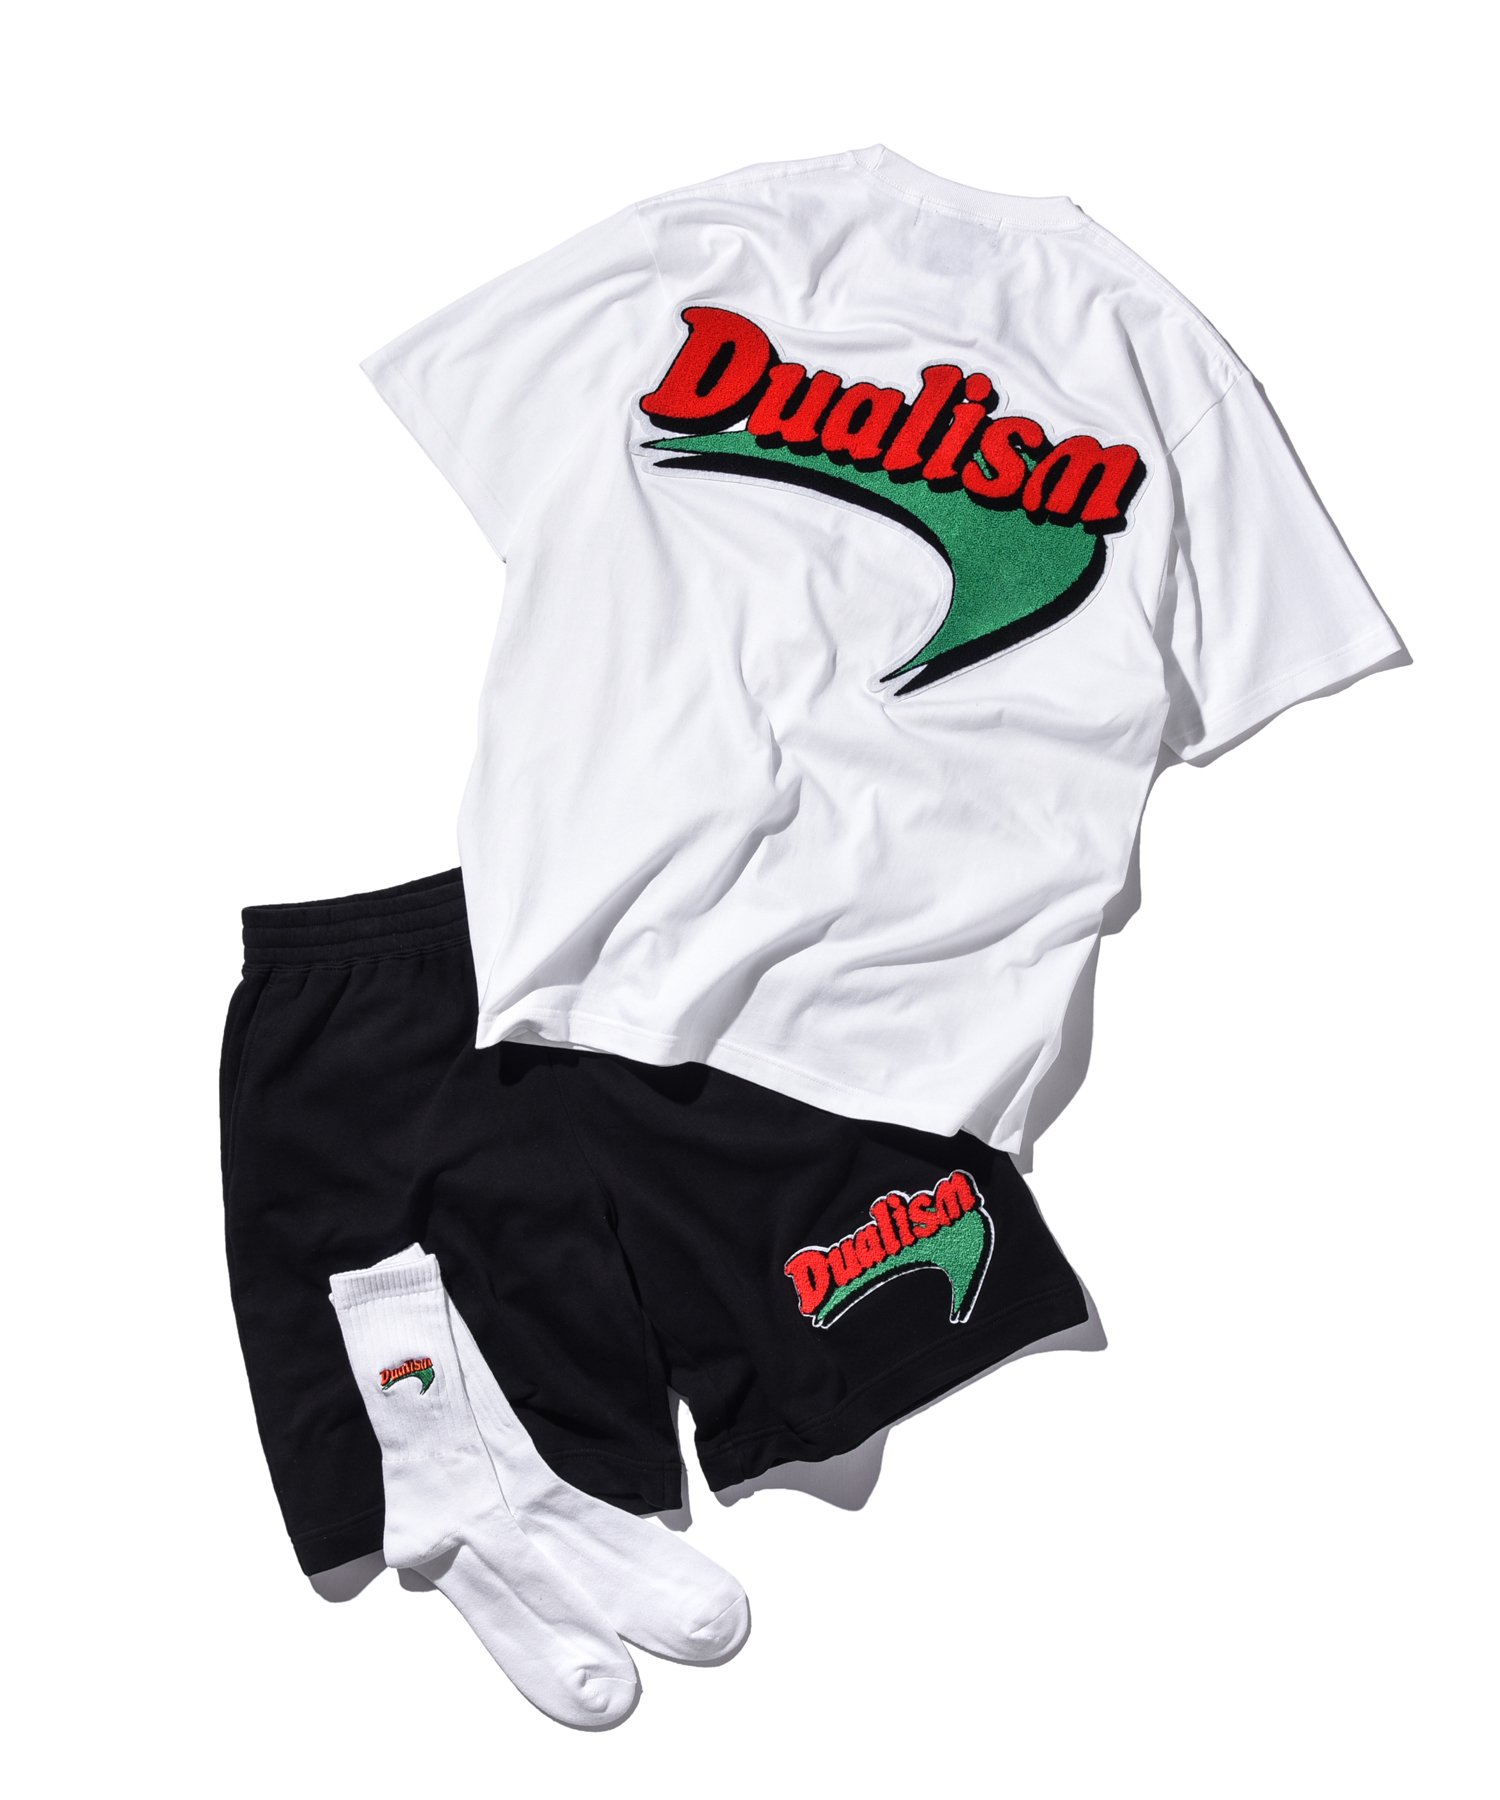 dualism ブーメランロゴ Tシャツ XLサイズ